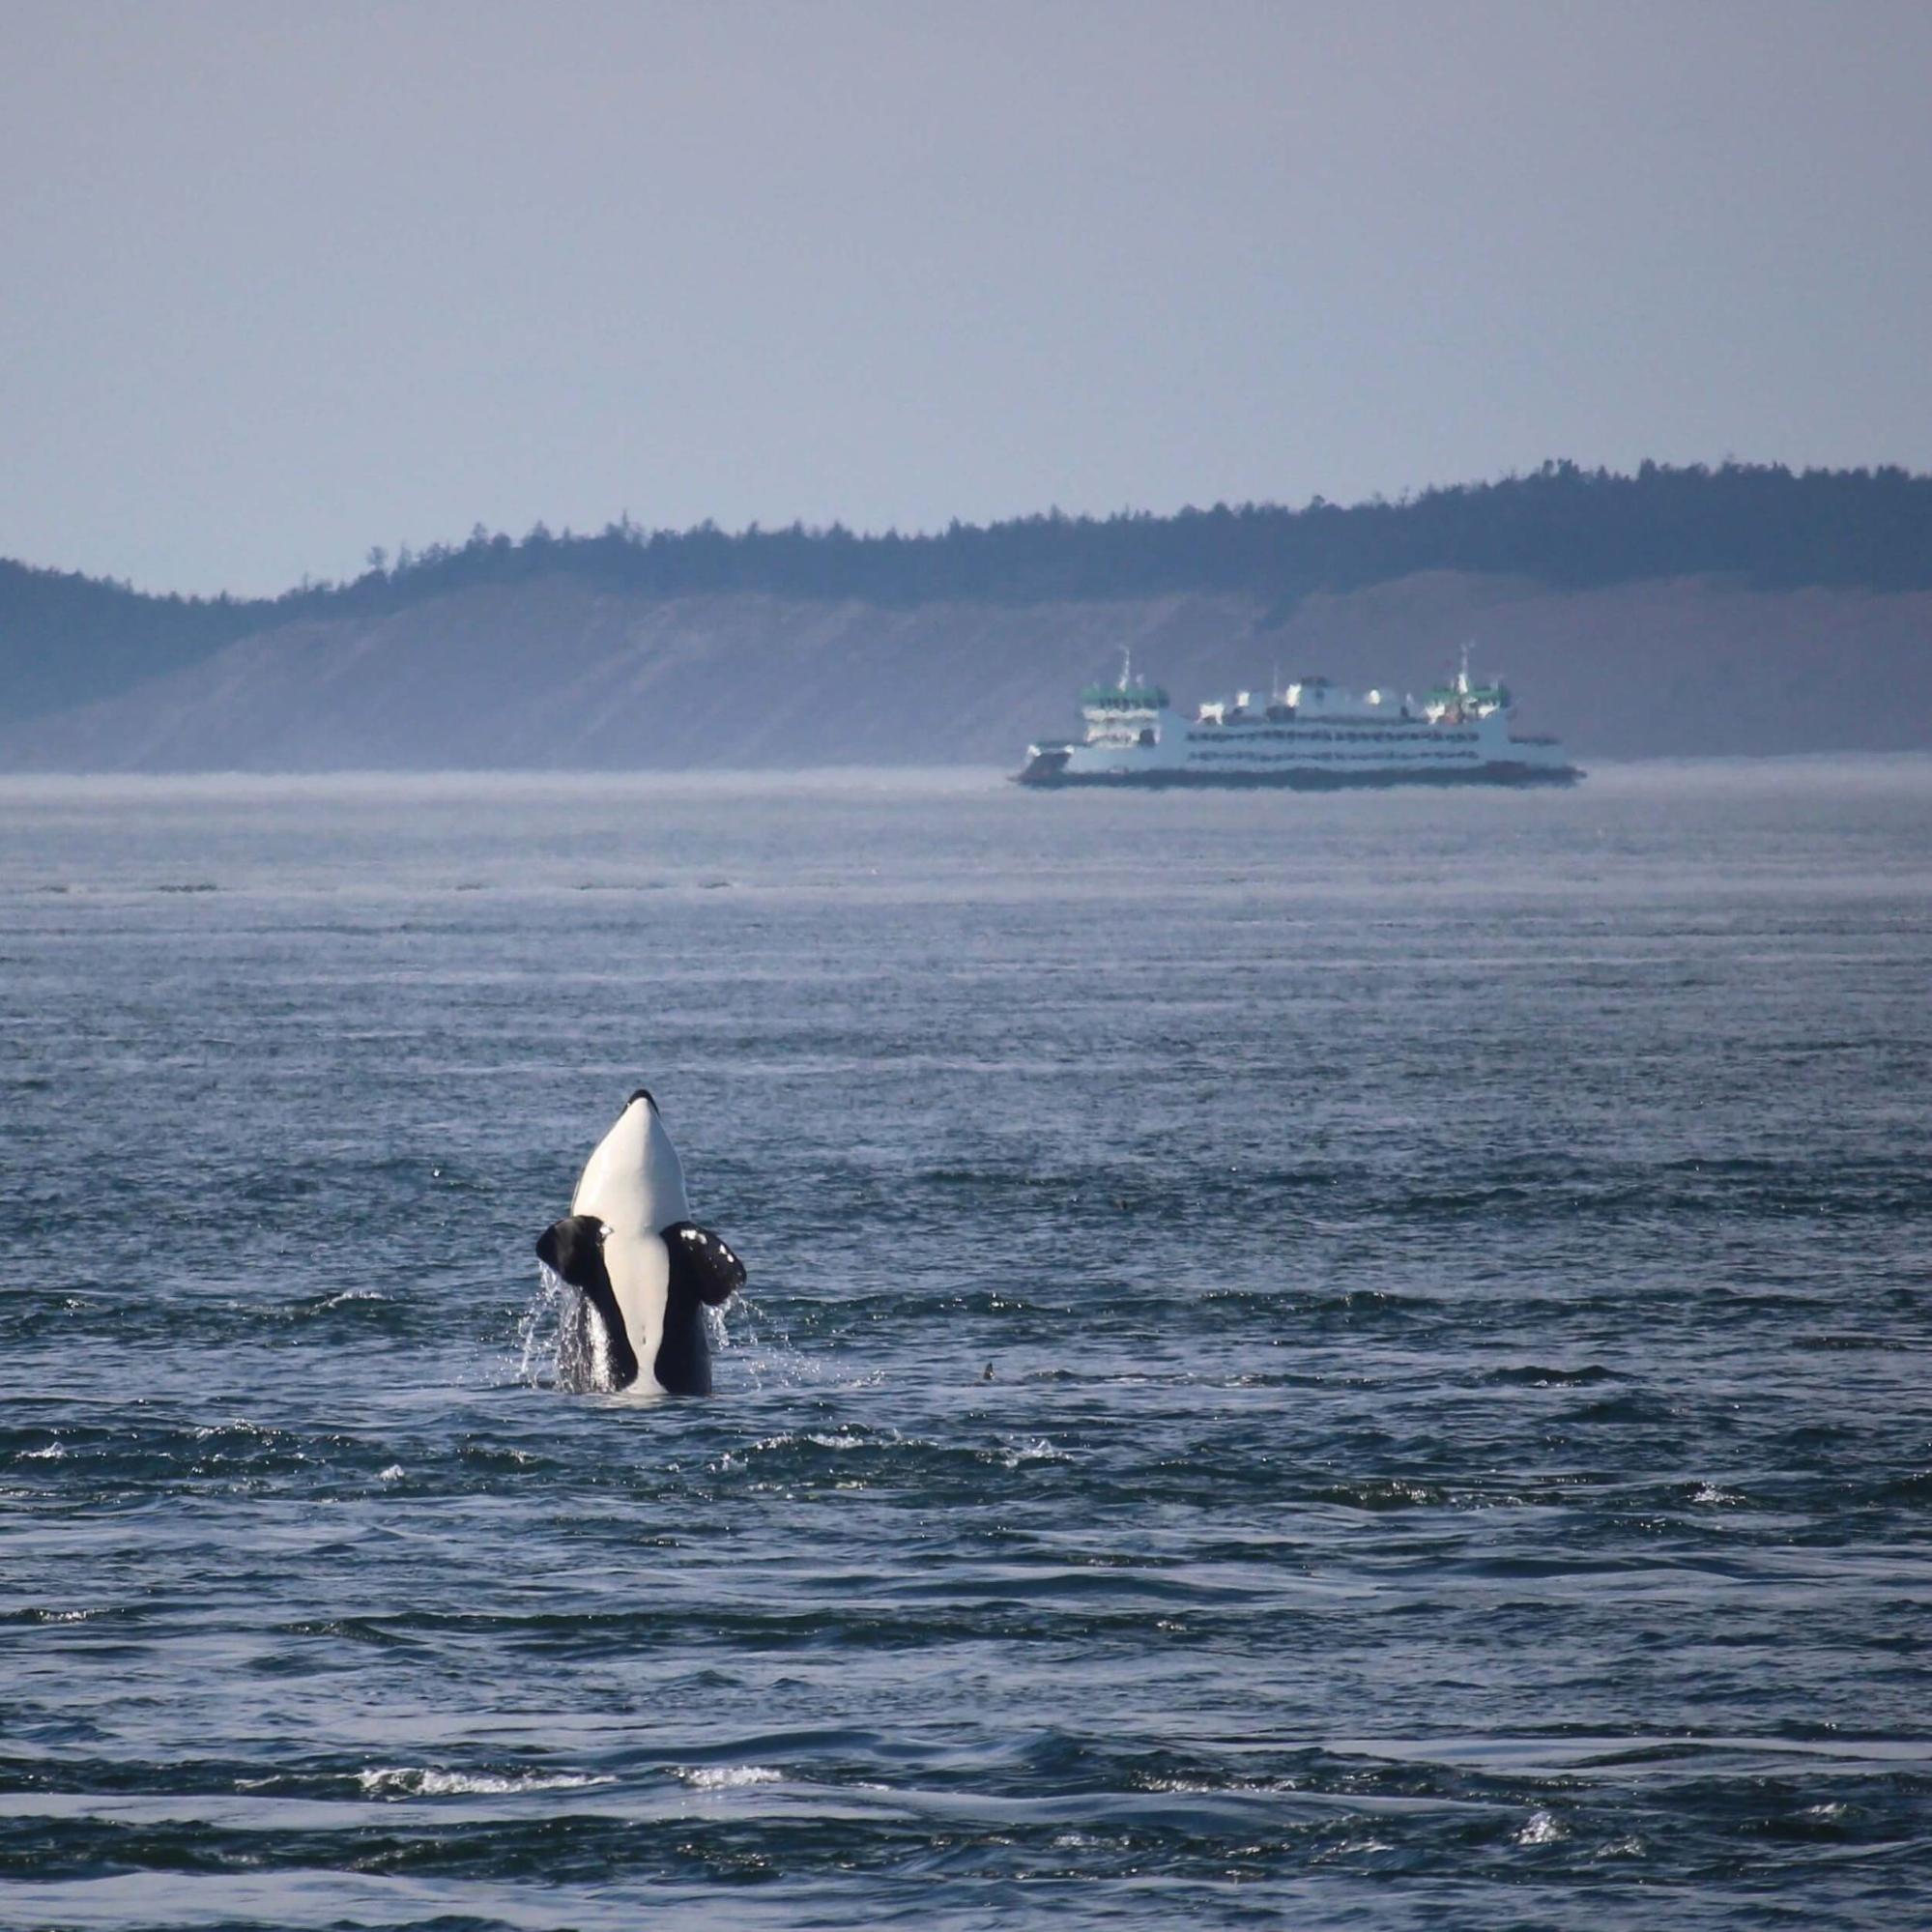 An orca whale breaches the ocean during whale watching season amid the San Juan Islands.